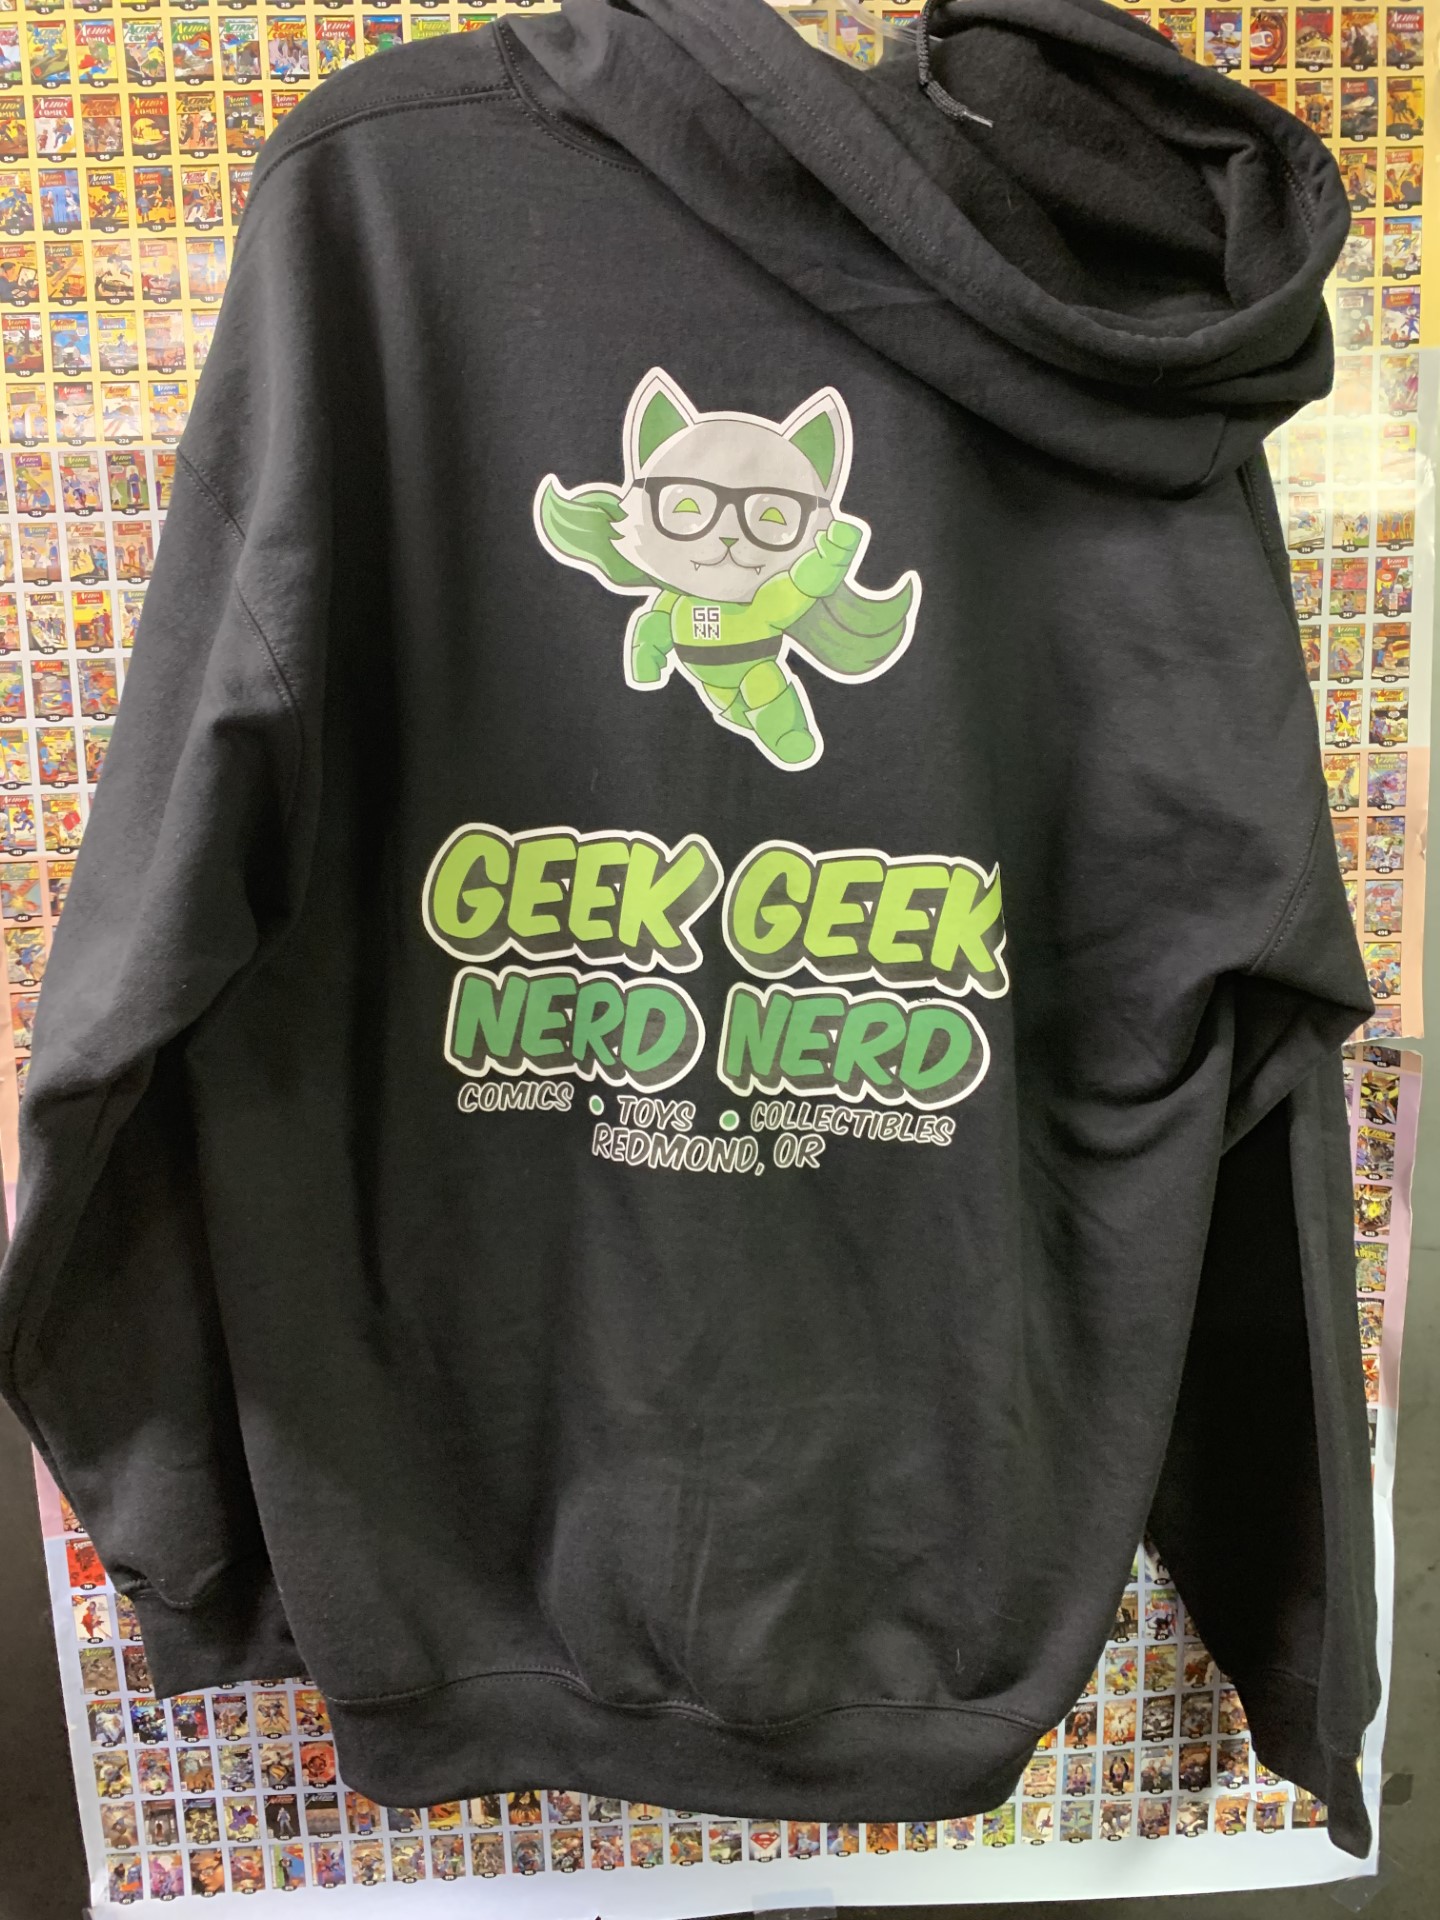 Geek Geek Nerd Nerd Sweatshirt Full Zip Up Black 2Xl